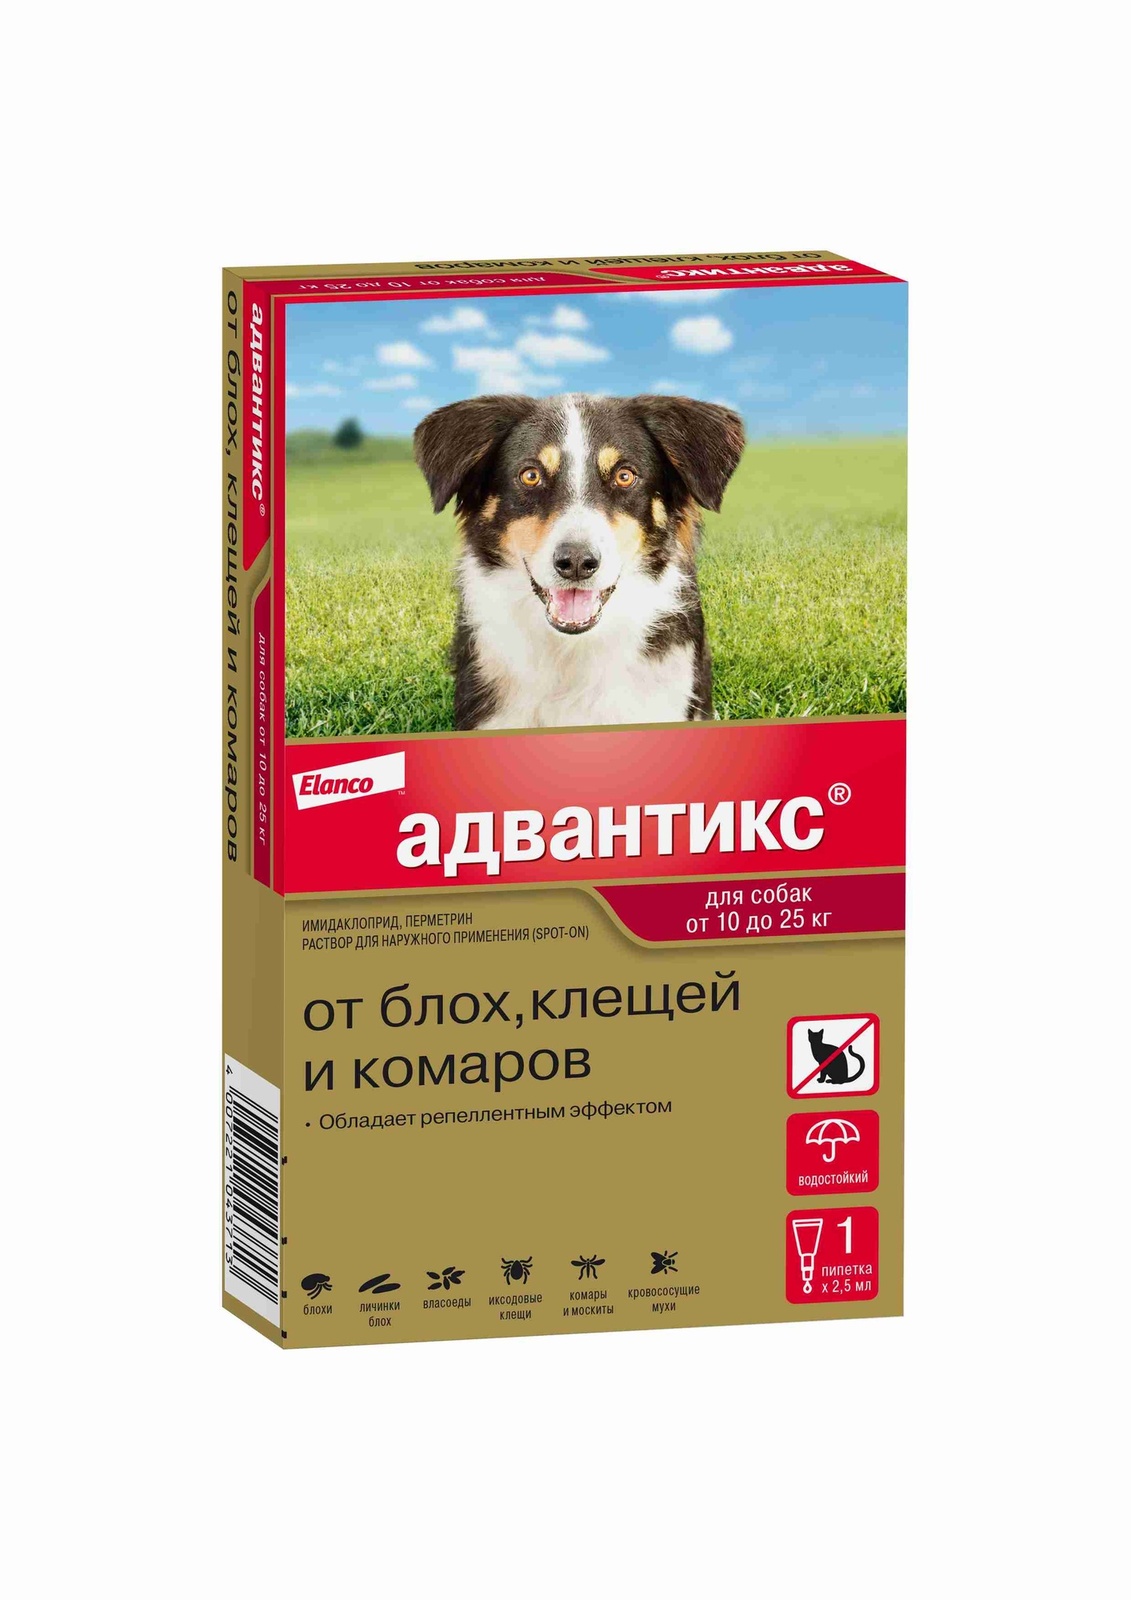 Elanco адвантикс®  для собак от 10 до 25 кг для защиты от блох, иксодовых клещей и летающих насекомых и переносимых ими заболеваний. 1 пипетка в упаковке. (1 × 2,5 мл)